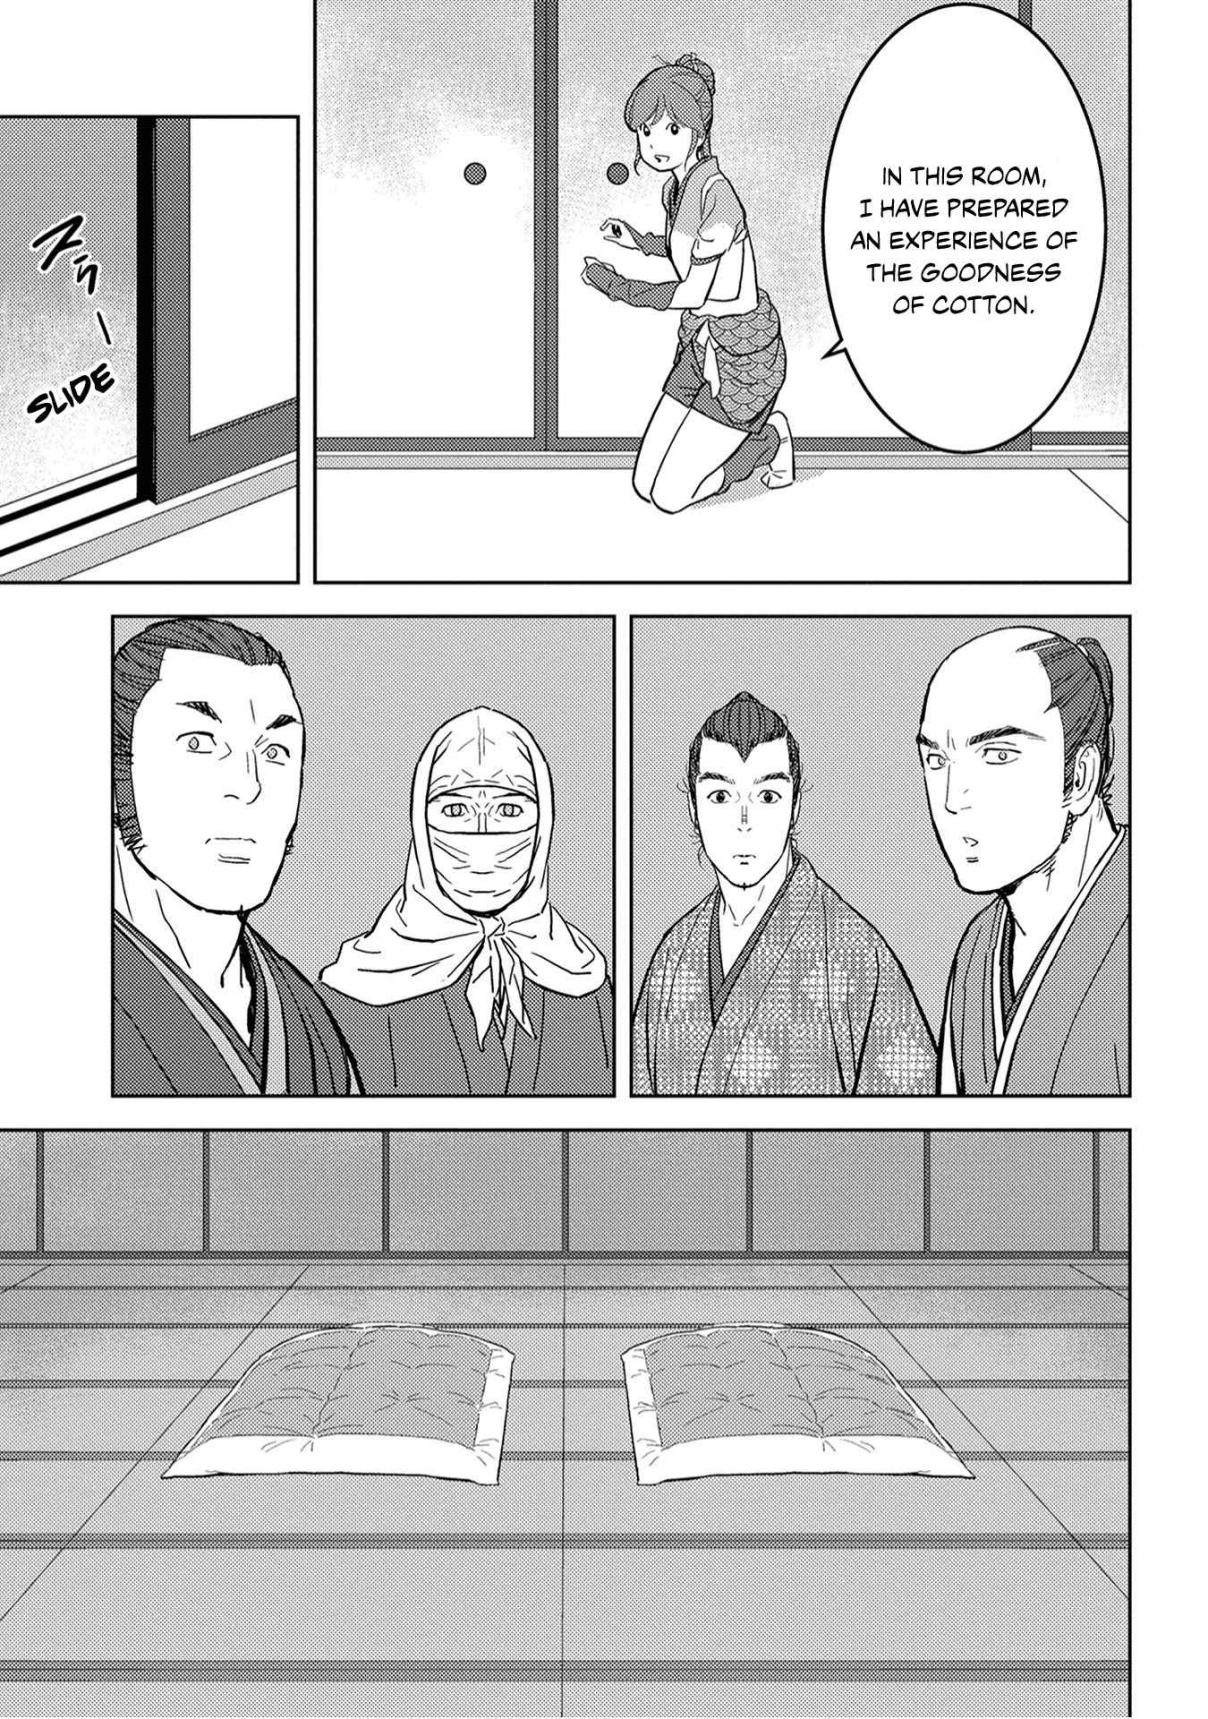 Sengoku Komachi Kuroutan: Noukou Giga Vol. 5 Ch. 21 Round Table